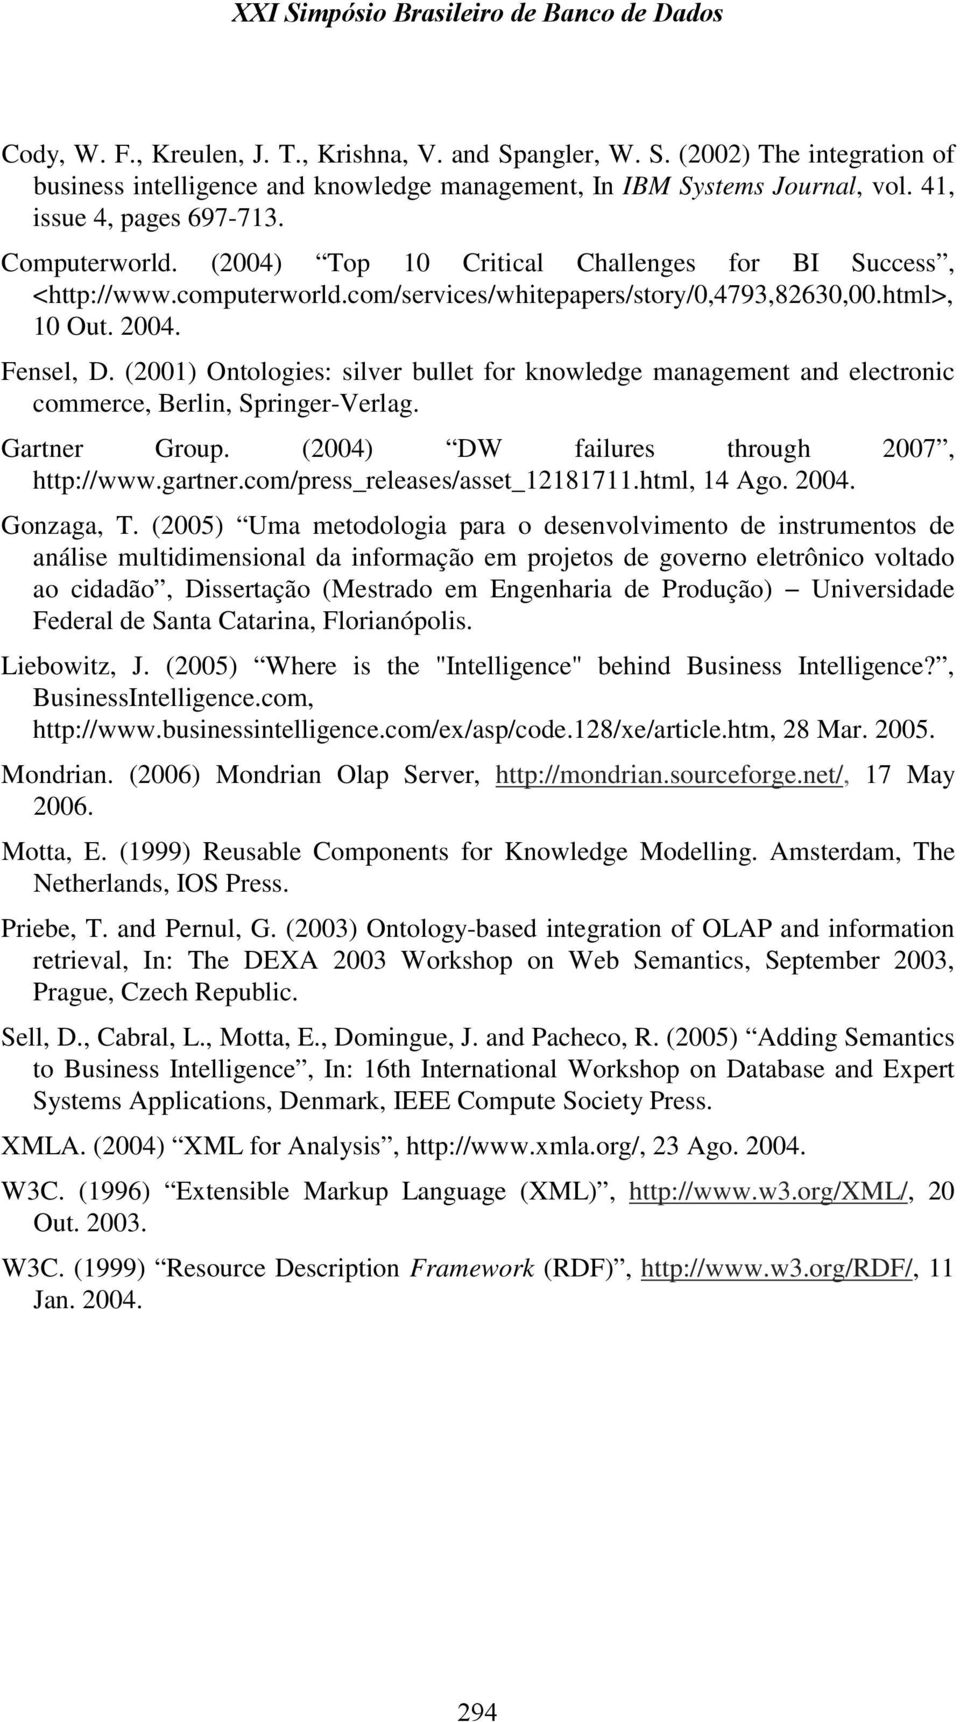 (2001) Ontologies: silver bullet for knowledge management and electronic commerce, Berlin, Springer-Verlag. Gartner Group. (2004) DW failures through 2007, http://www.gartner.